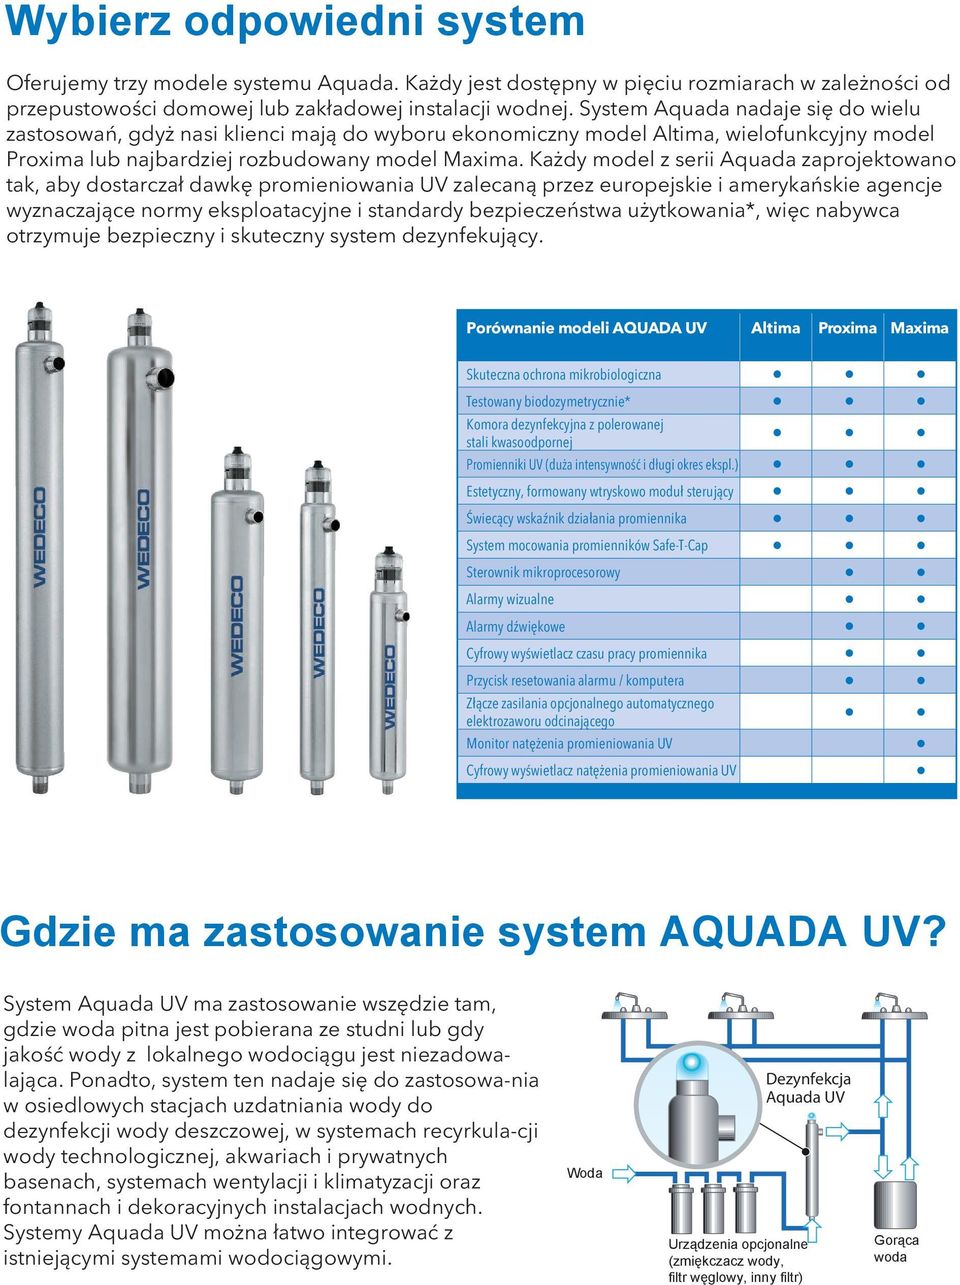 Każdy model z serii Aquada zaprojektowano tak, aby dostarczał dawkę promieniowania UV zalecaną przez europejskie i amerykańskie agencje wyznaczające normy eksploatacyjne i standardy bezpieczeństwa